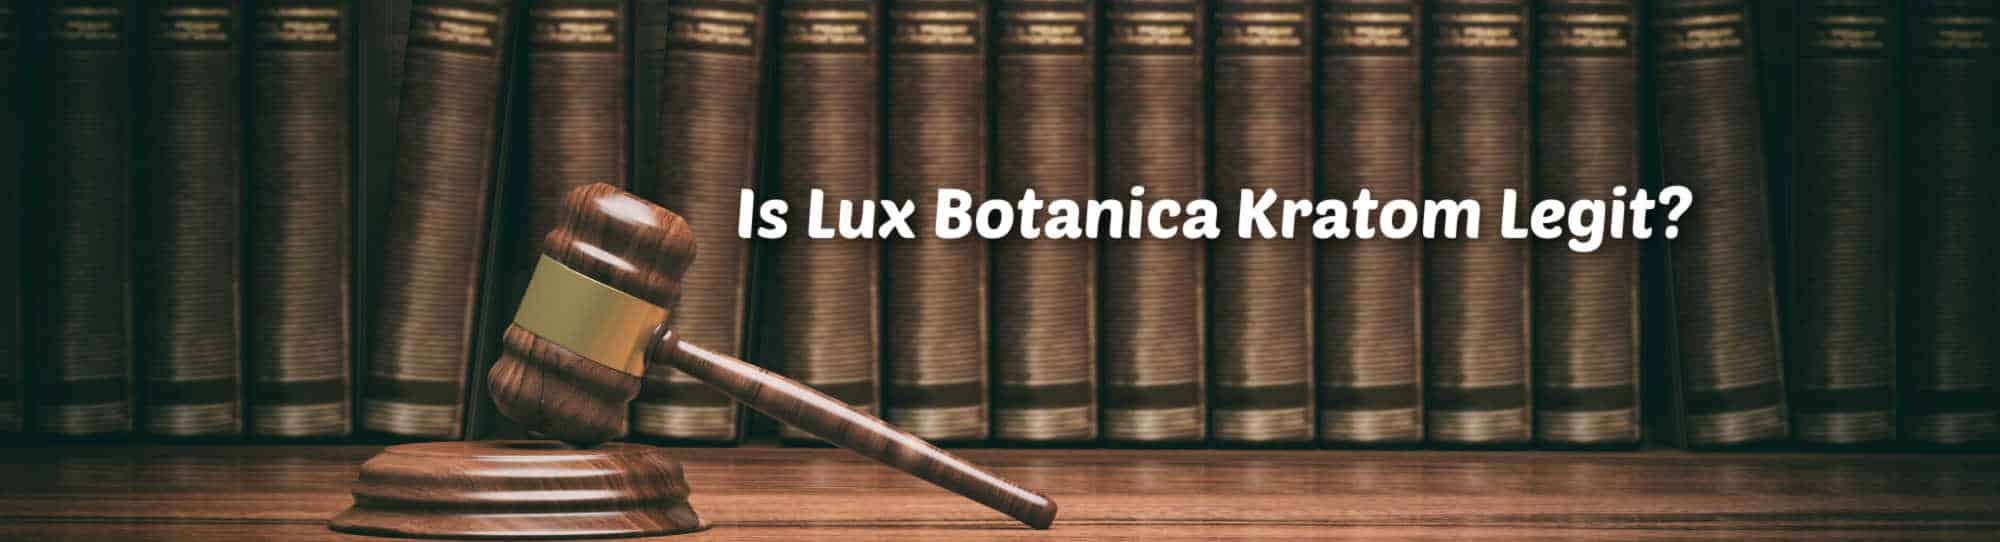 image of lux botanica kratom legit